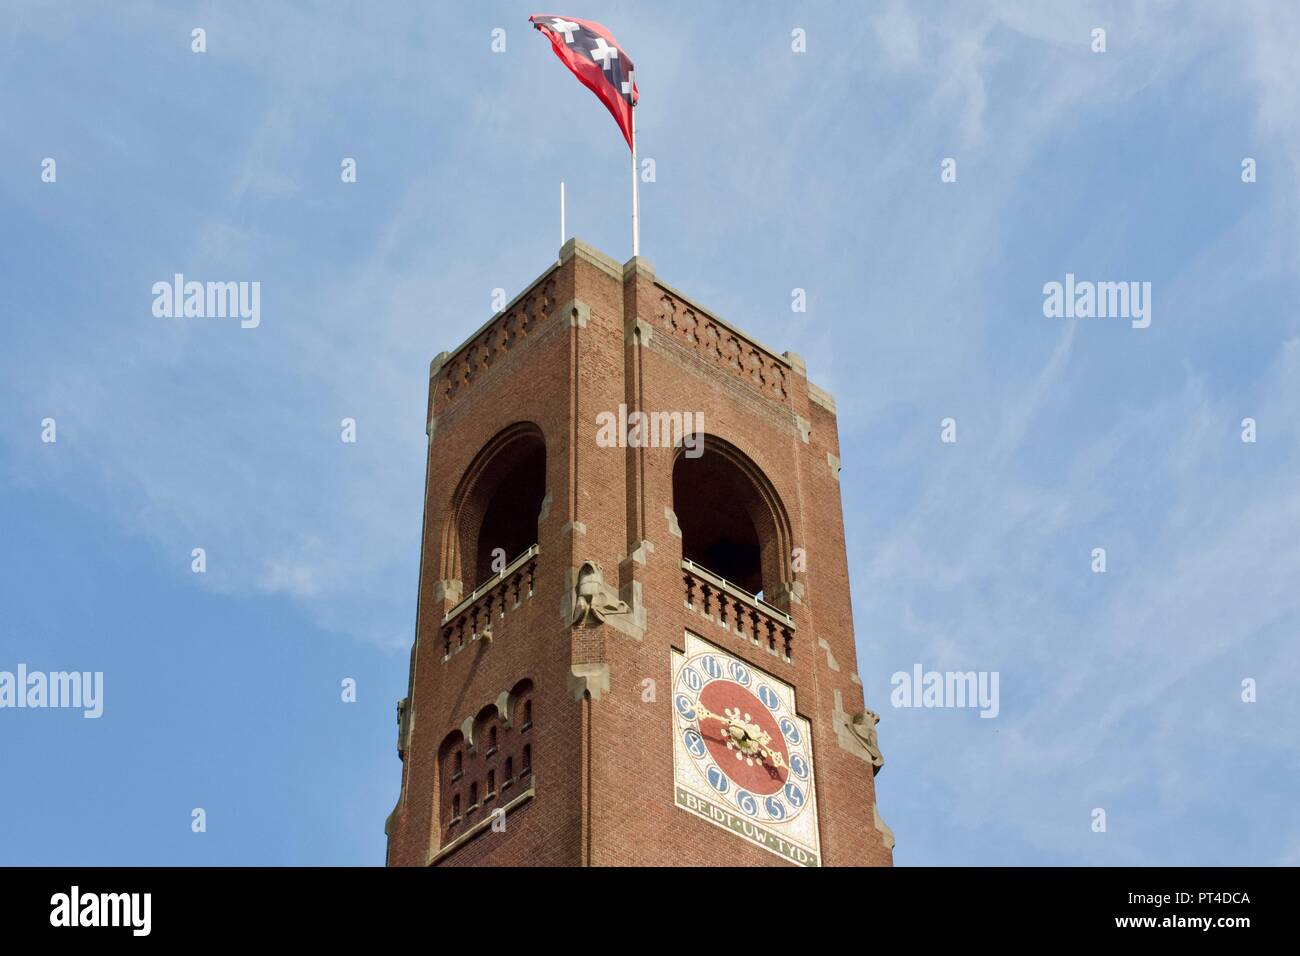 Beurs van Berlage ou tour Toren Amsterdam avec le drapeau sur le toit dans le vent. Beurs van Berlage est l'ancien bâtiment de la bourse. Banque D'Images